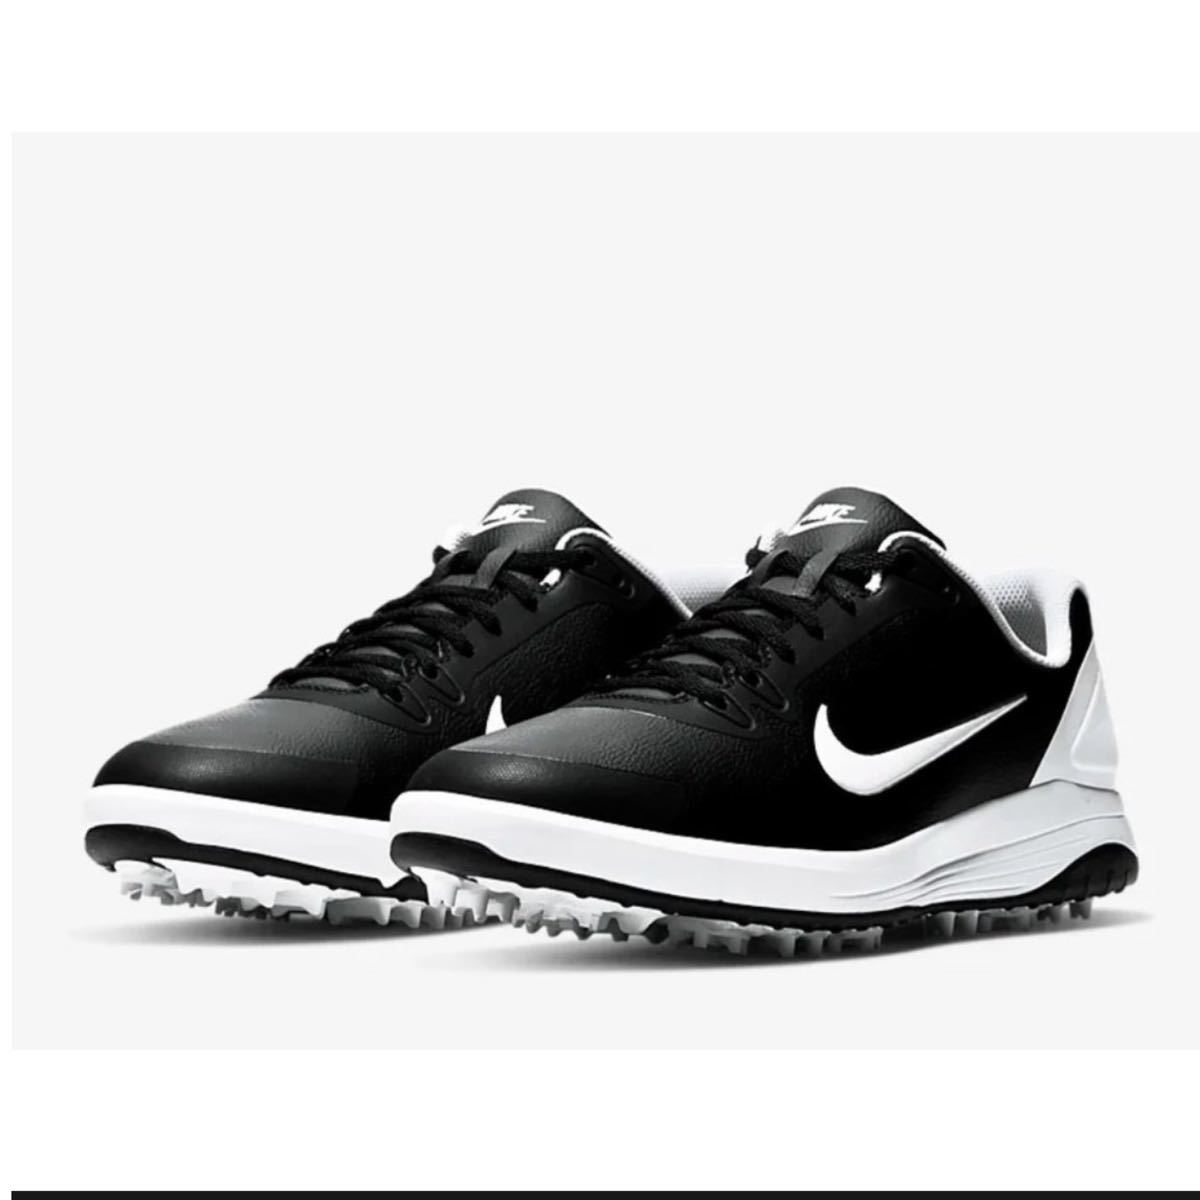 ナイキ インフィニティーG ゴルフシューズ ブラック Nike Infinity G Golf Shoes メンズ 